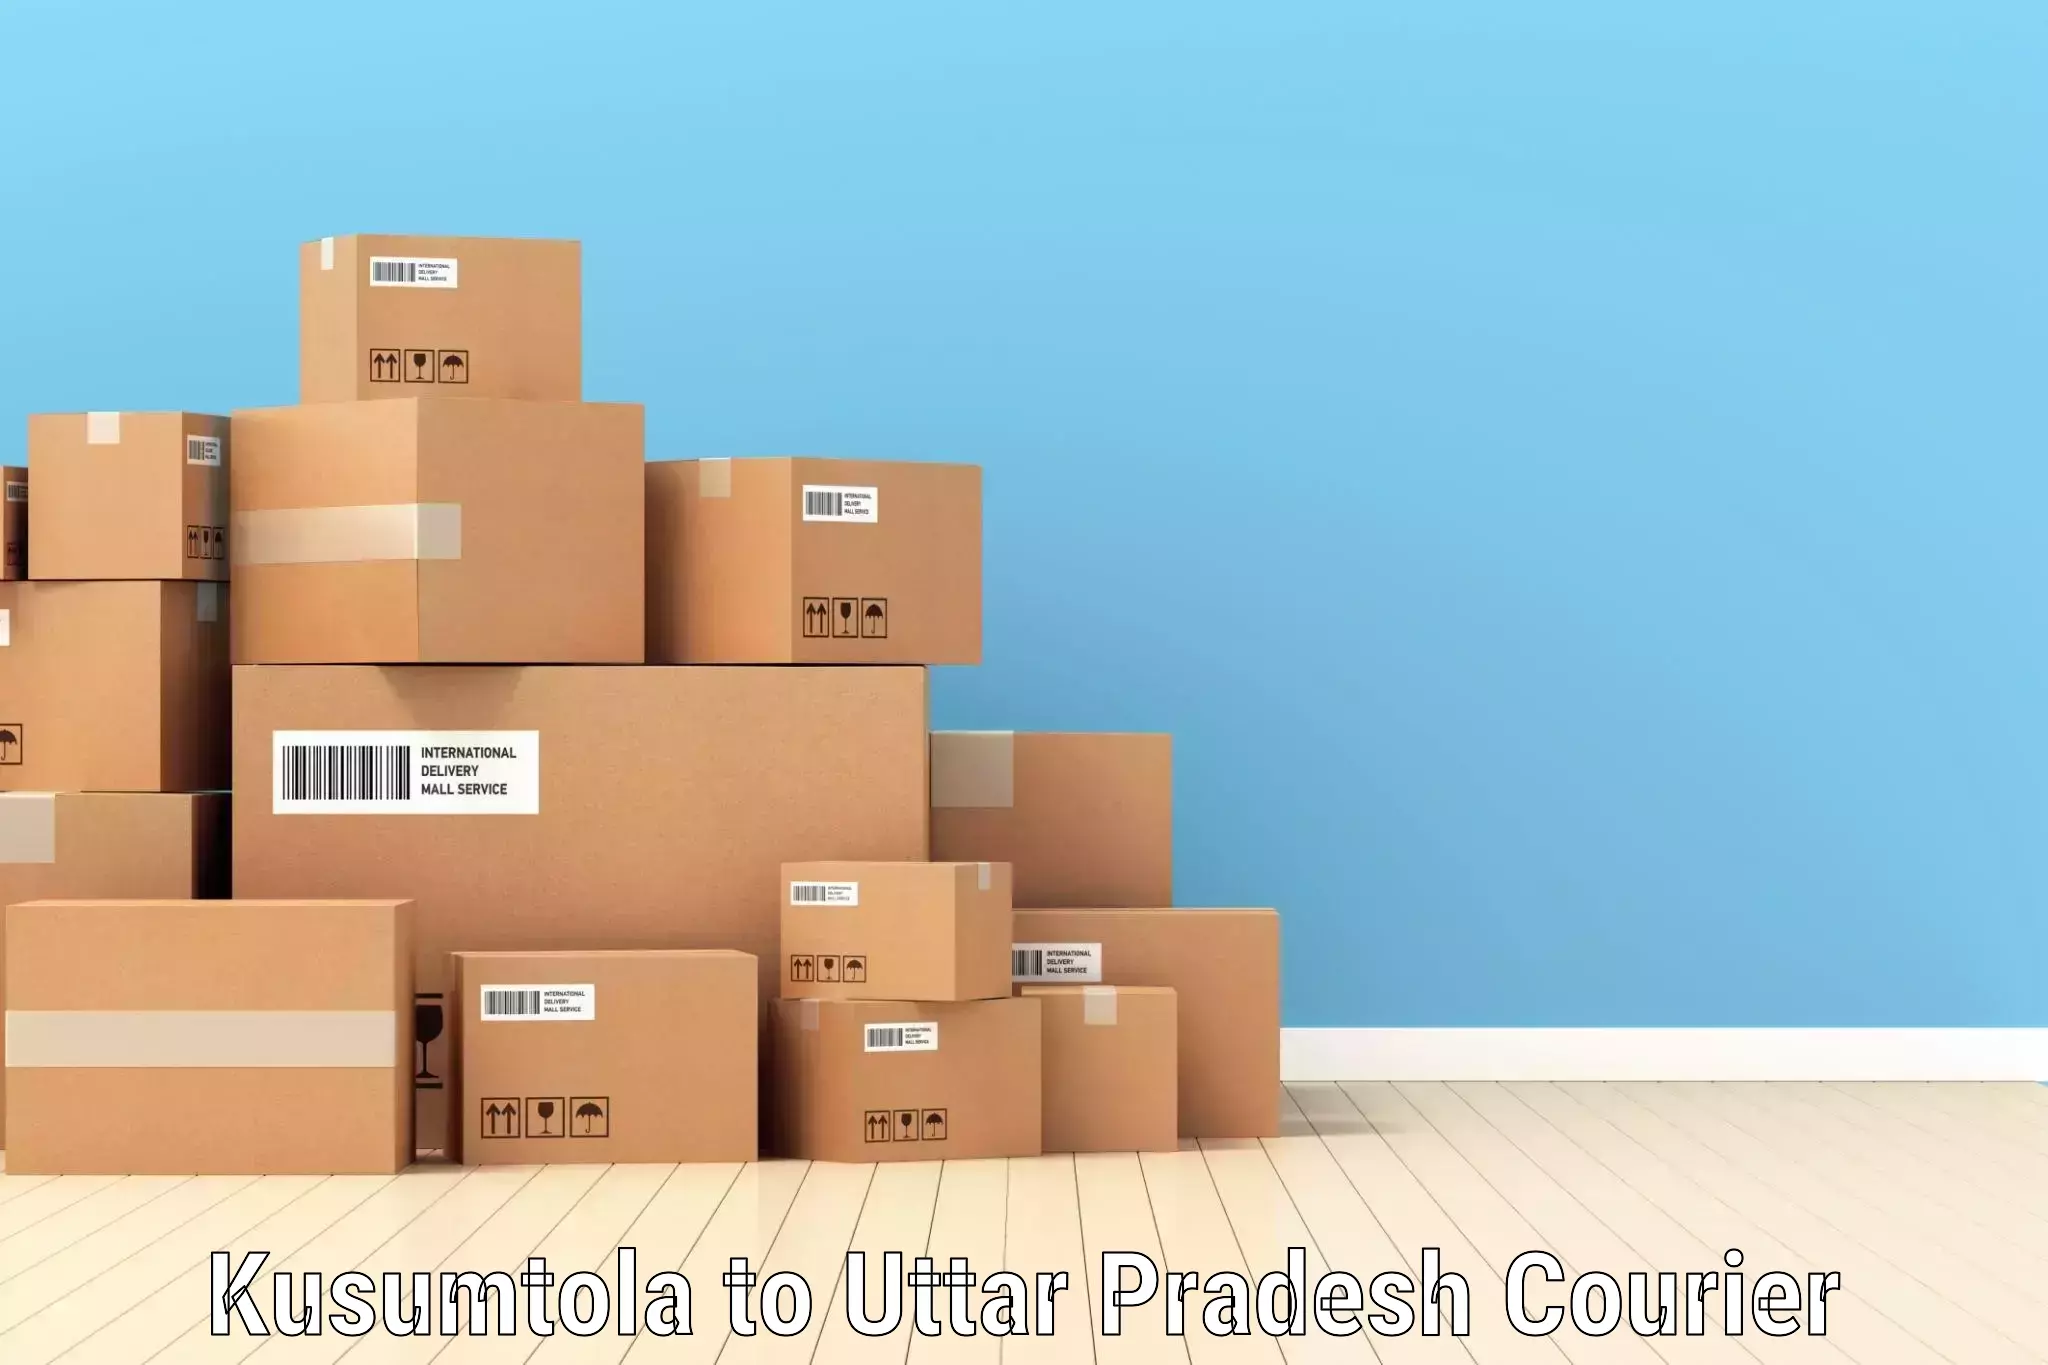 Same-day delivery options Kusumtola to Uttar Pradesh